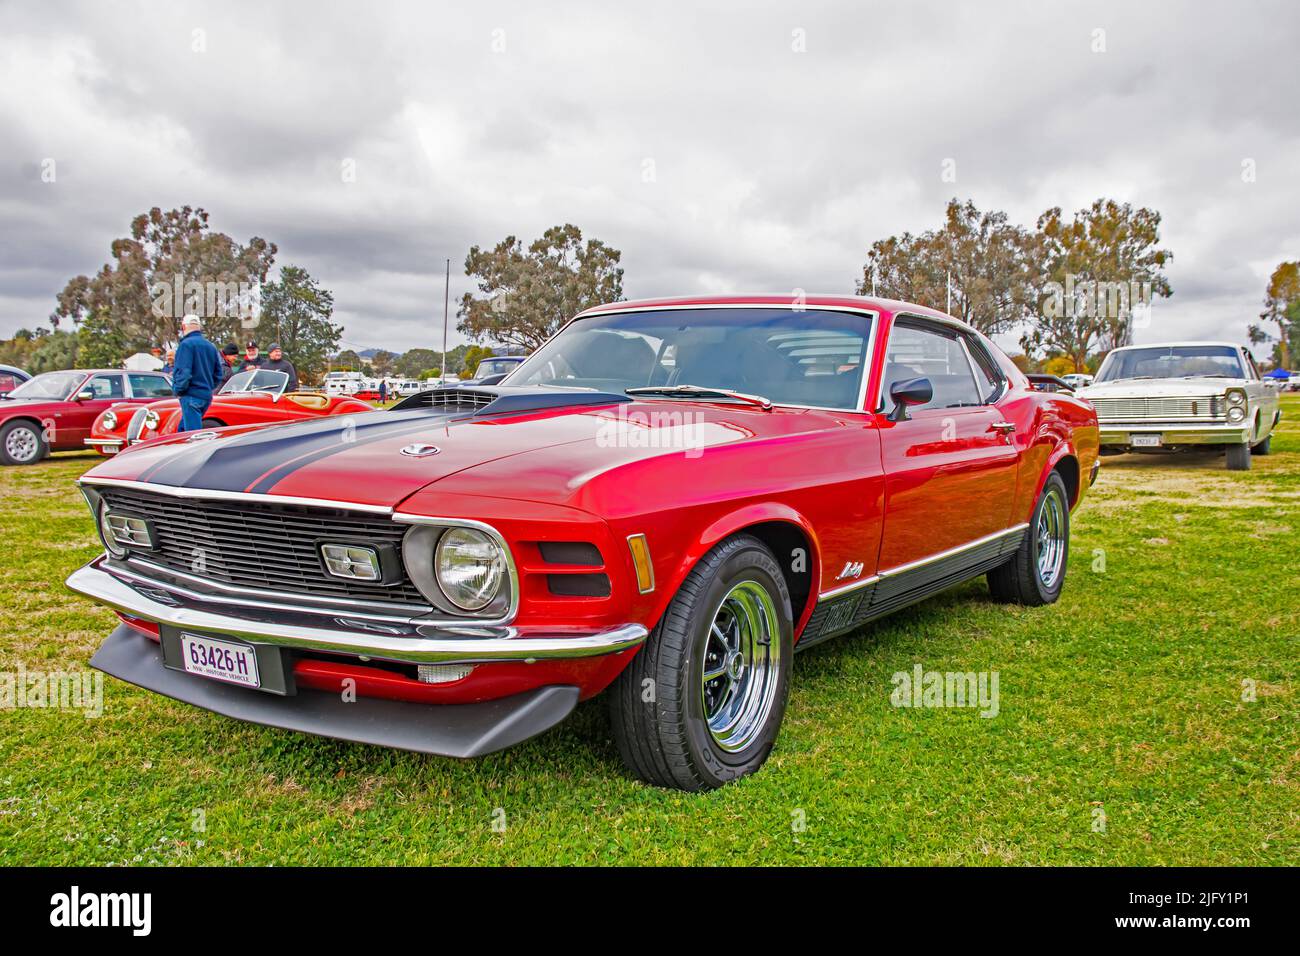 ▷ Tableau vintage d'une Mustang rouge